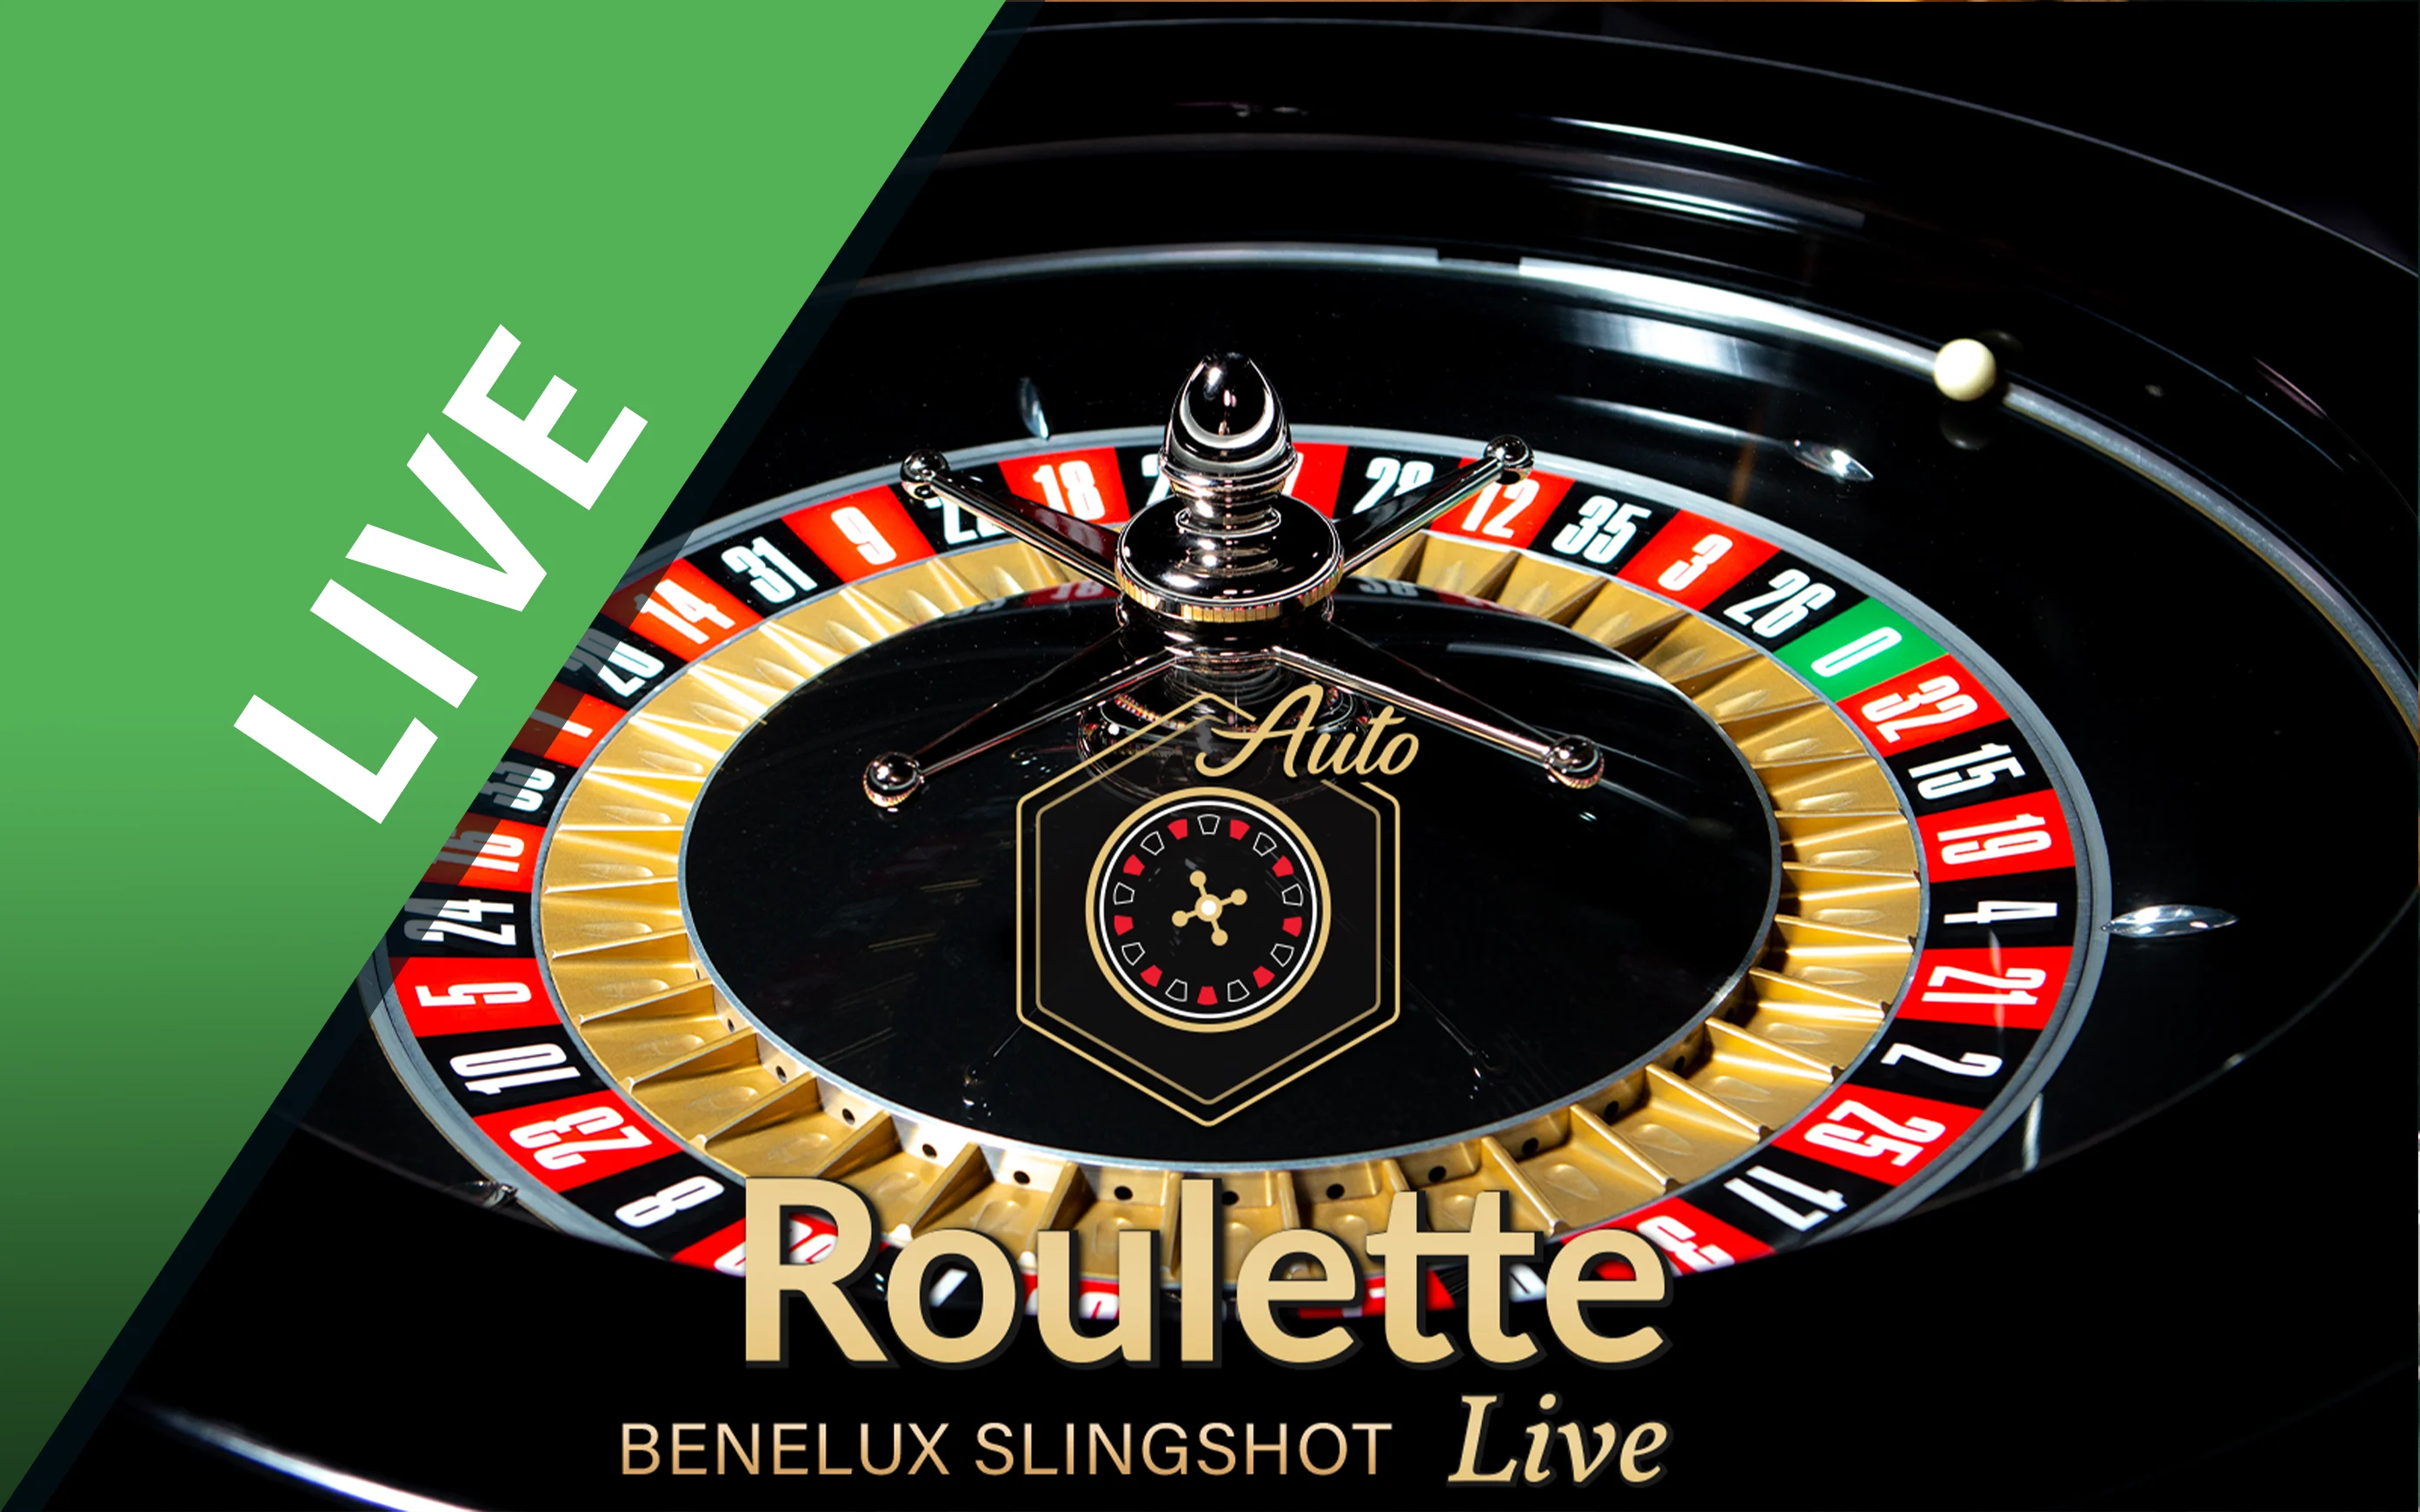 Jouer à Benelux Slingshot Roulette sur le casino en ligne Starcasino.be